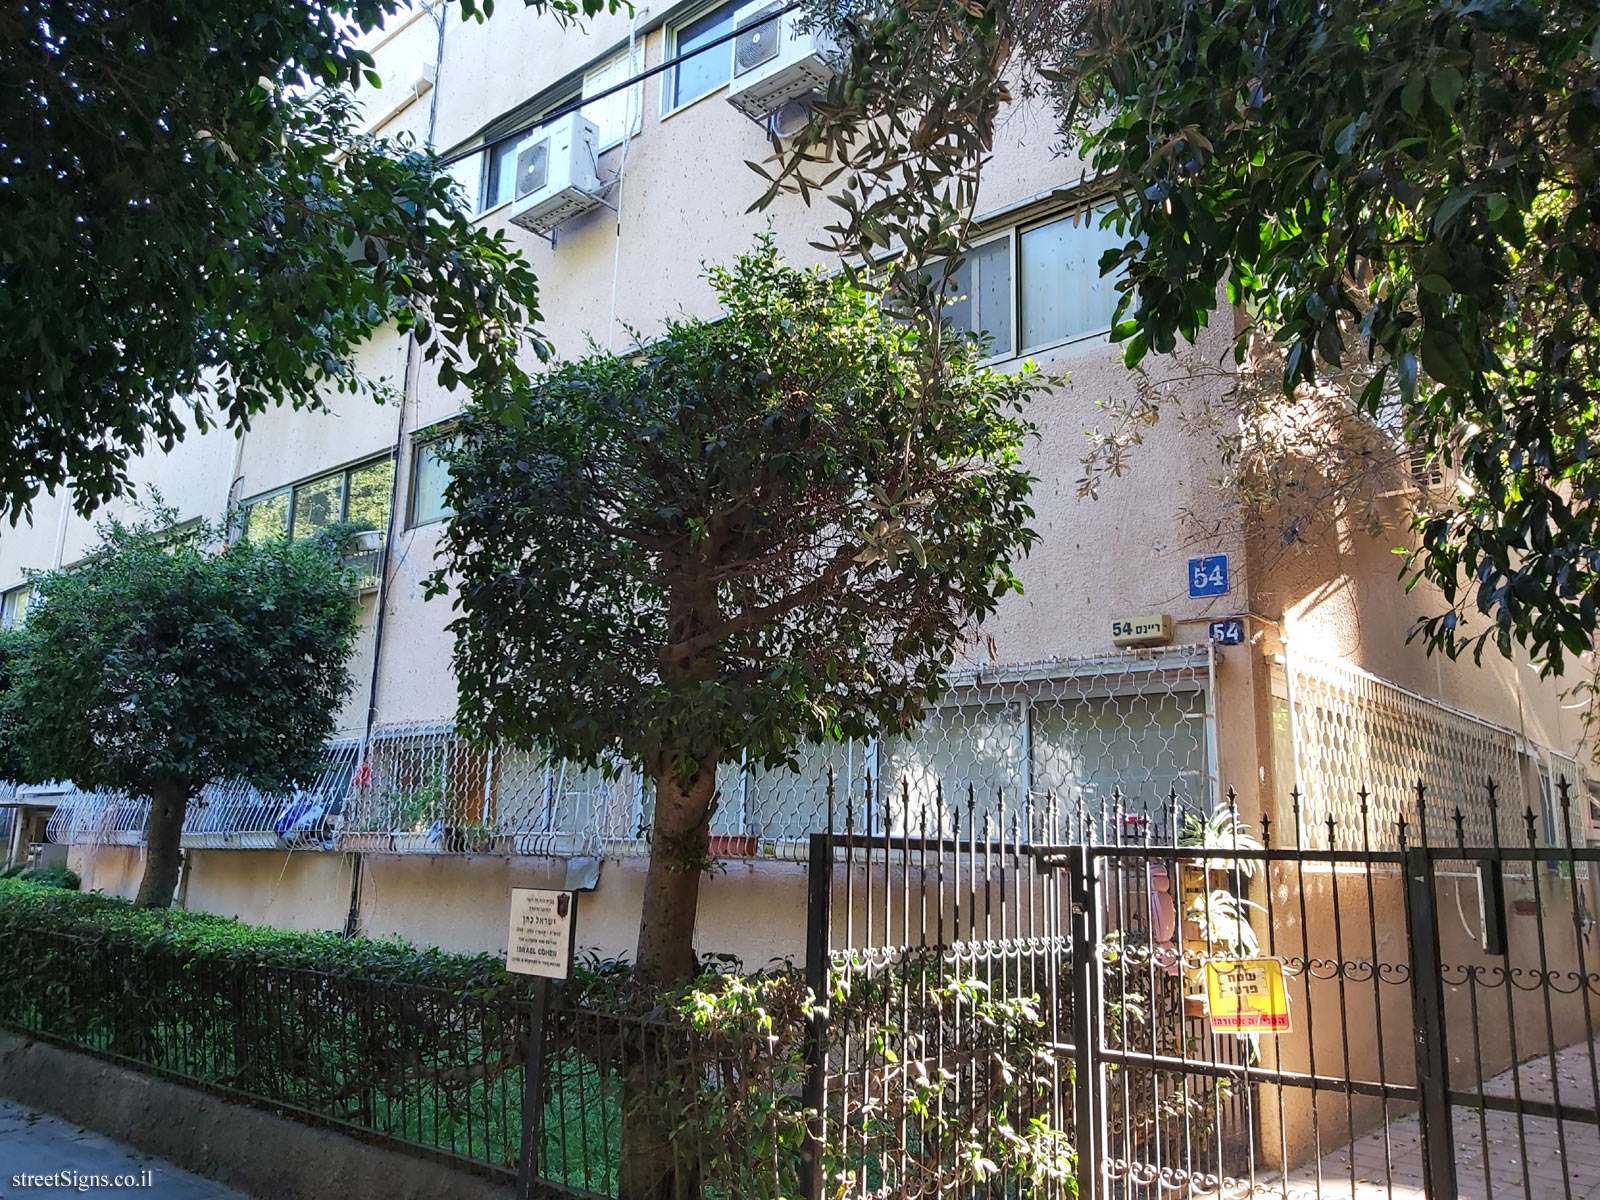 The house of Israel Cohen - HaRav Reines St 54, Tel Aviv-Yafo, Israel